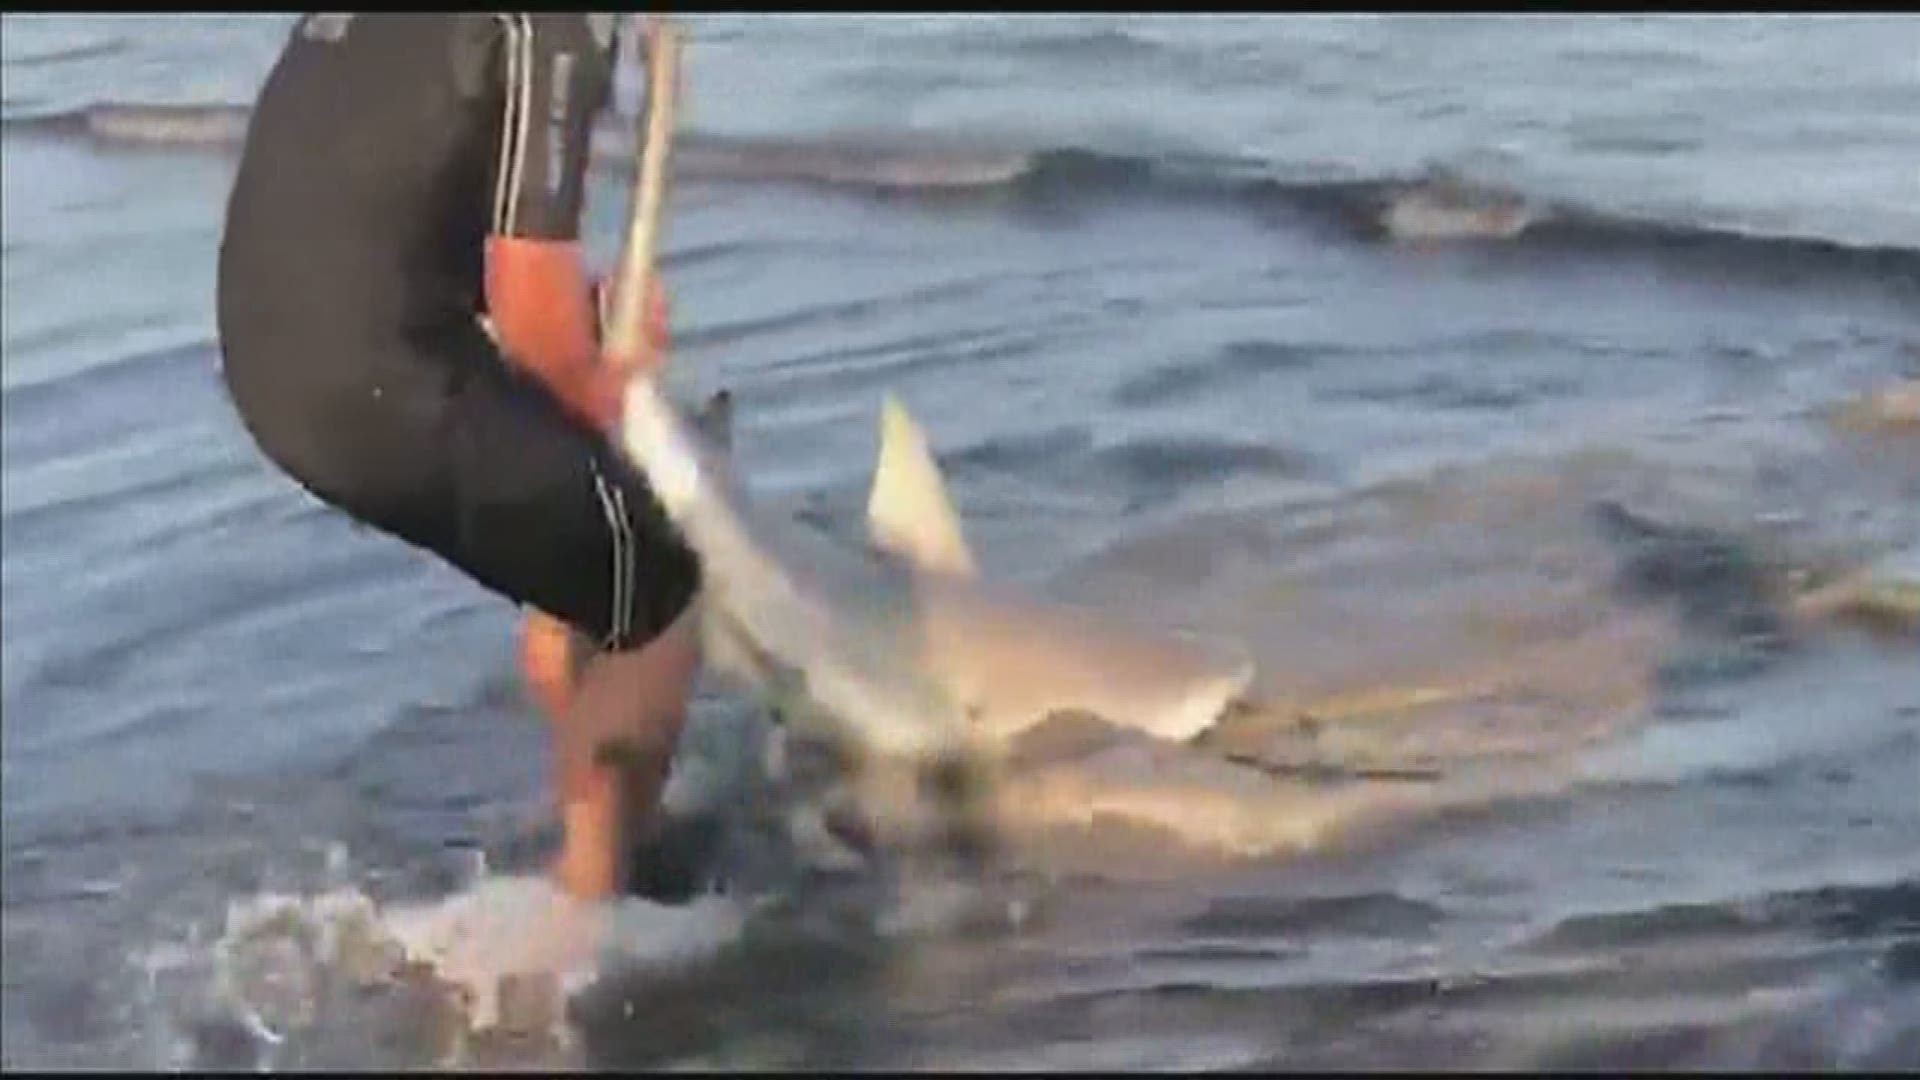 Beachgoer reels in shark on Galveston beach | khou.com